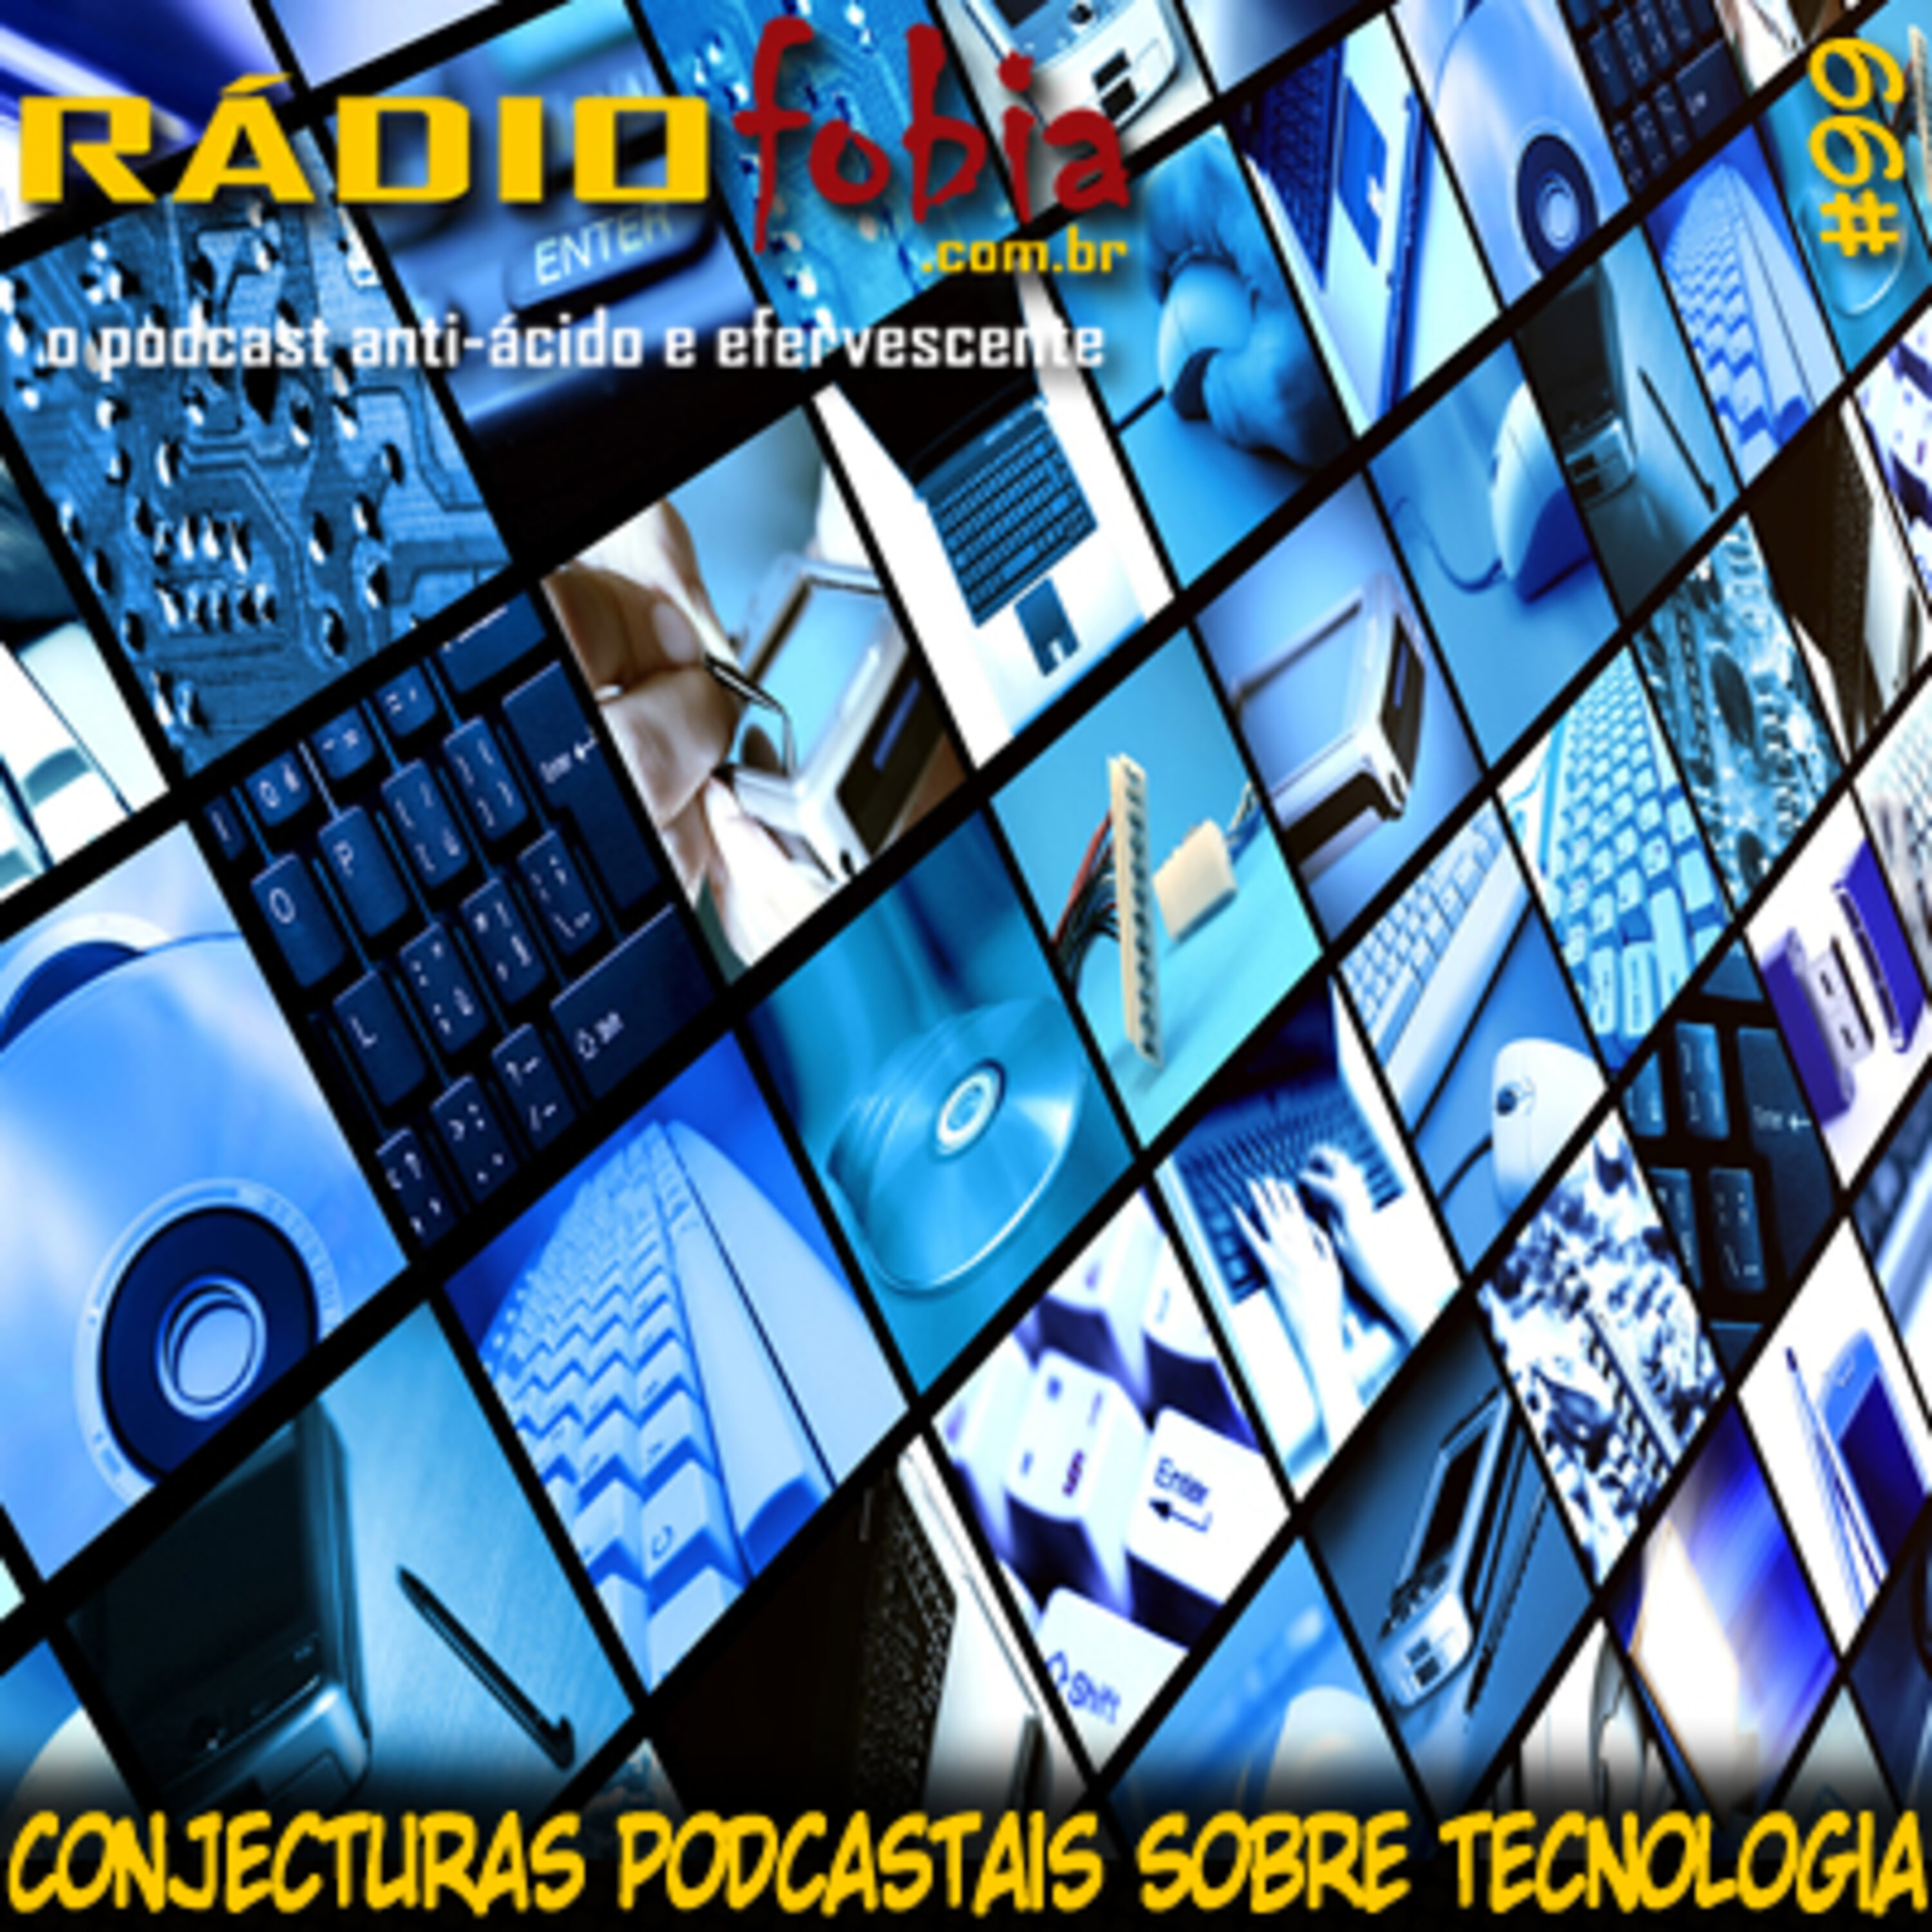 RADIOFOBIA 99 – Conjecturas podcastais sobre tecnologia